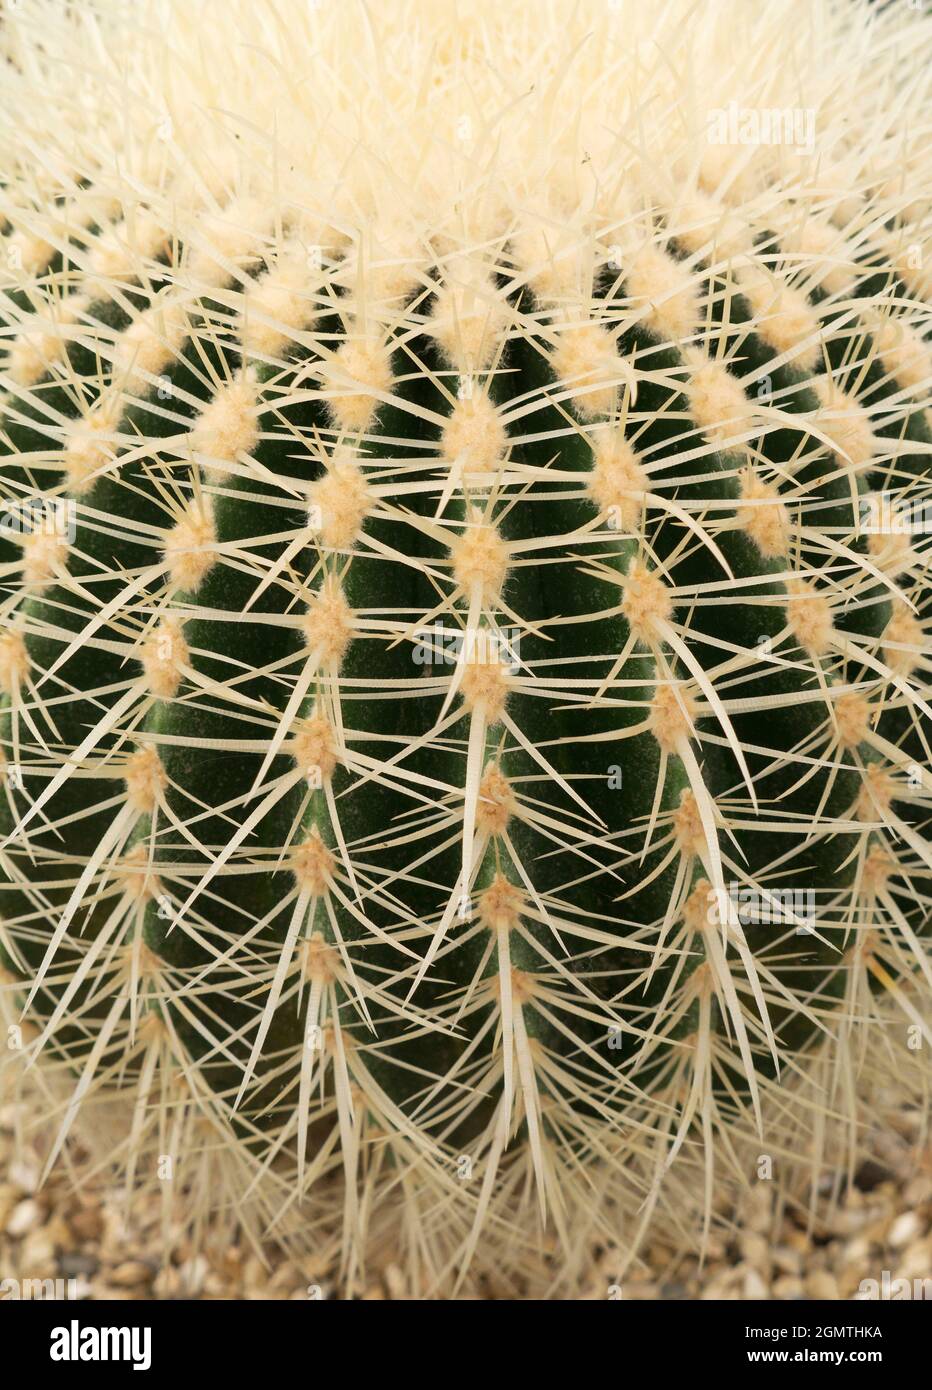 Wenn man sich so nah an etwas heran kommt, beginnt es abstrakte Schönheit zu zeigen. Dieser schöne, stachelige Kaktus in meinem Haus ist keine Ausnahme! Stockfoto